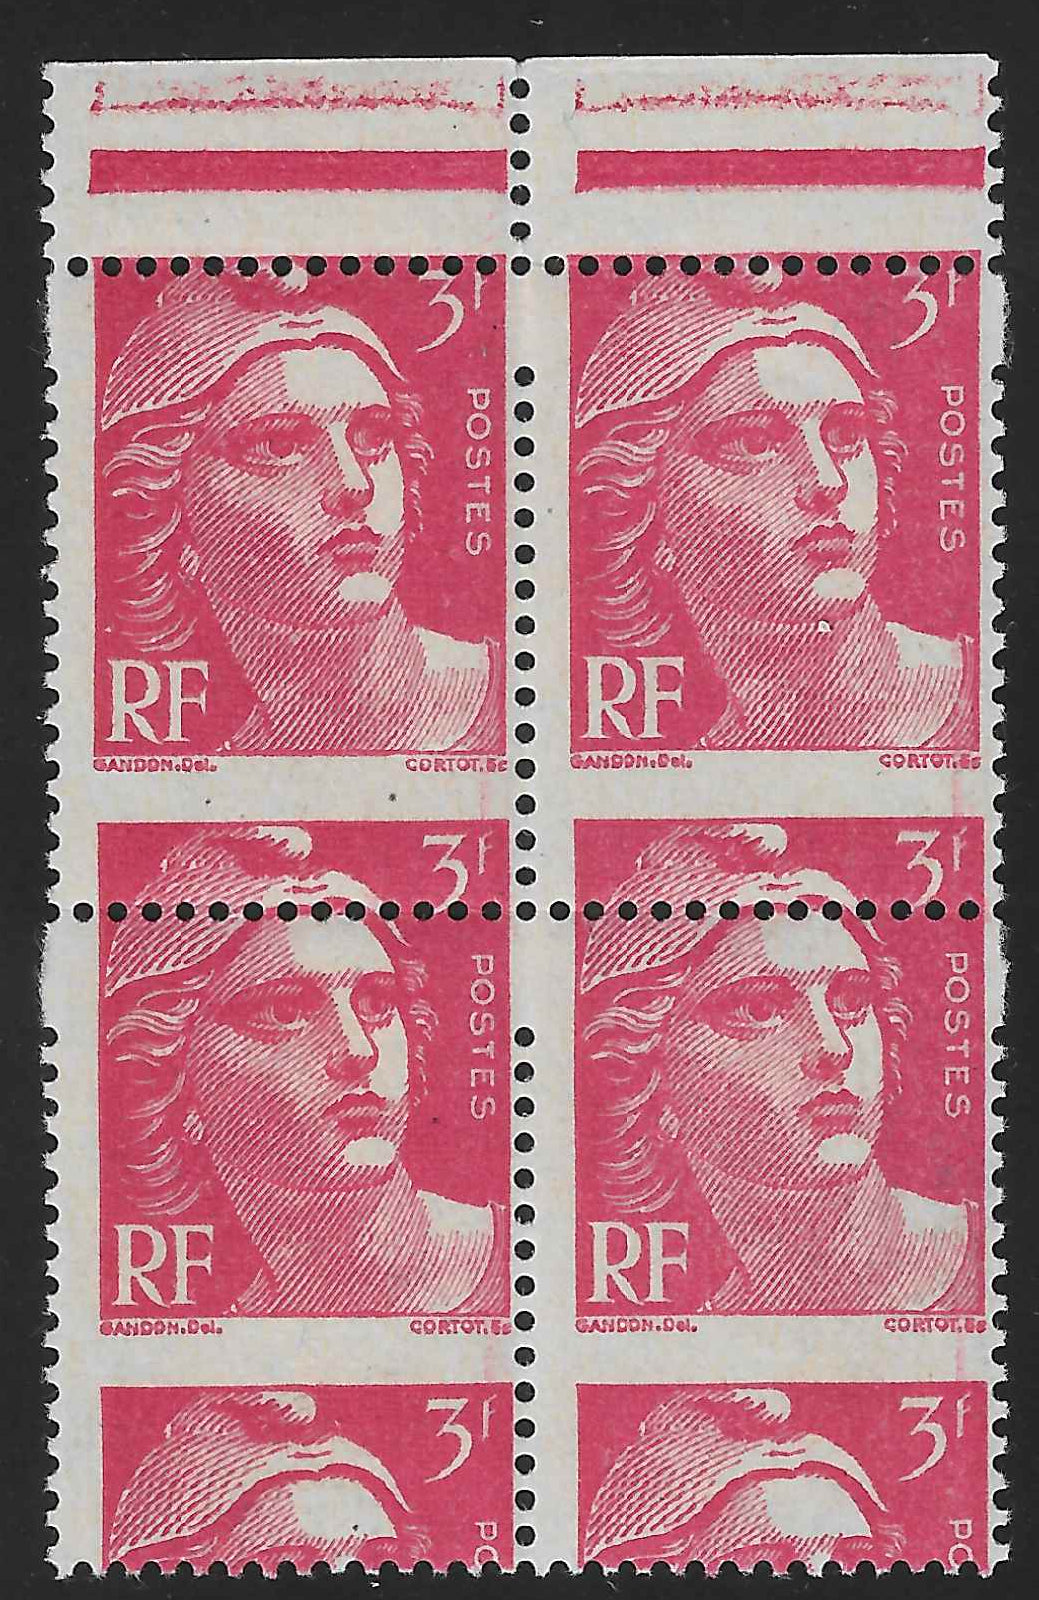 N°YT 716 - Marianne de Gandon - variété timbres plus grands et piquage à cheval - neufs** - SUP - signés Calves